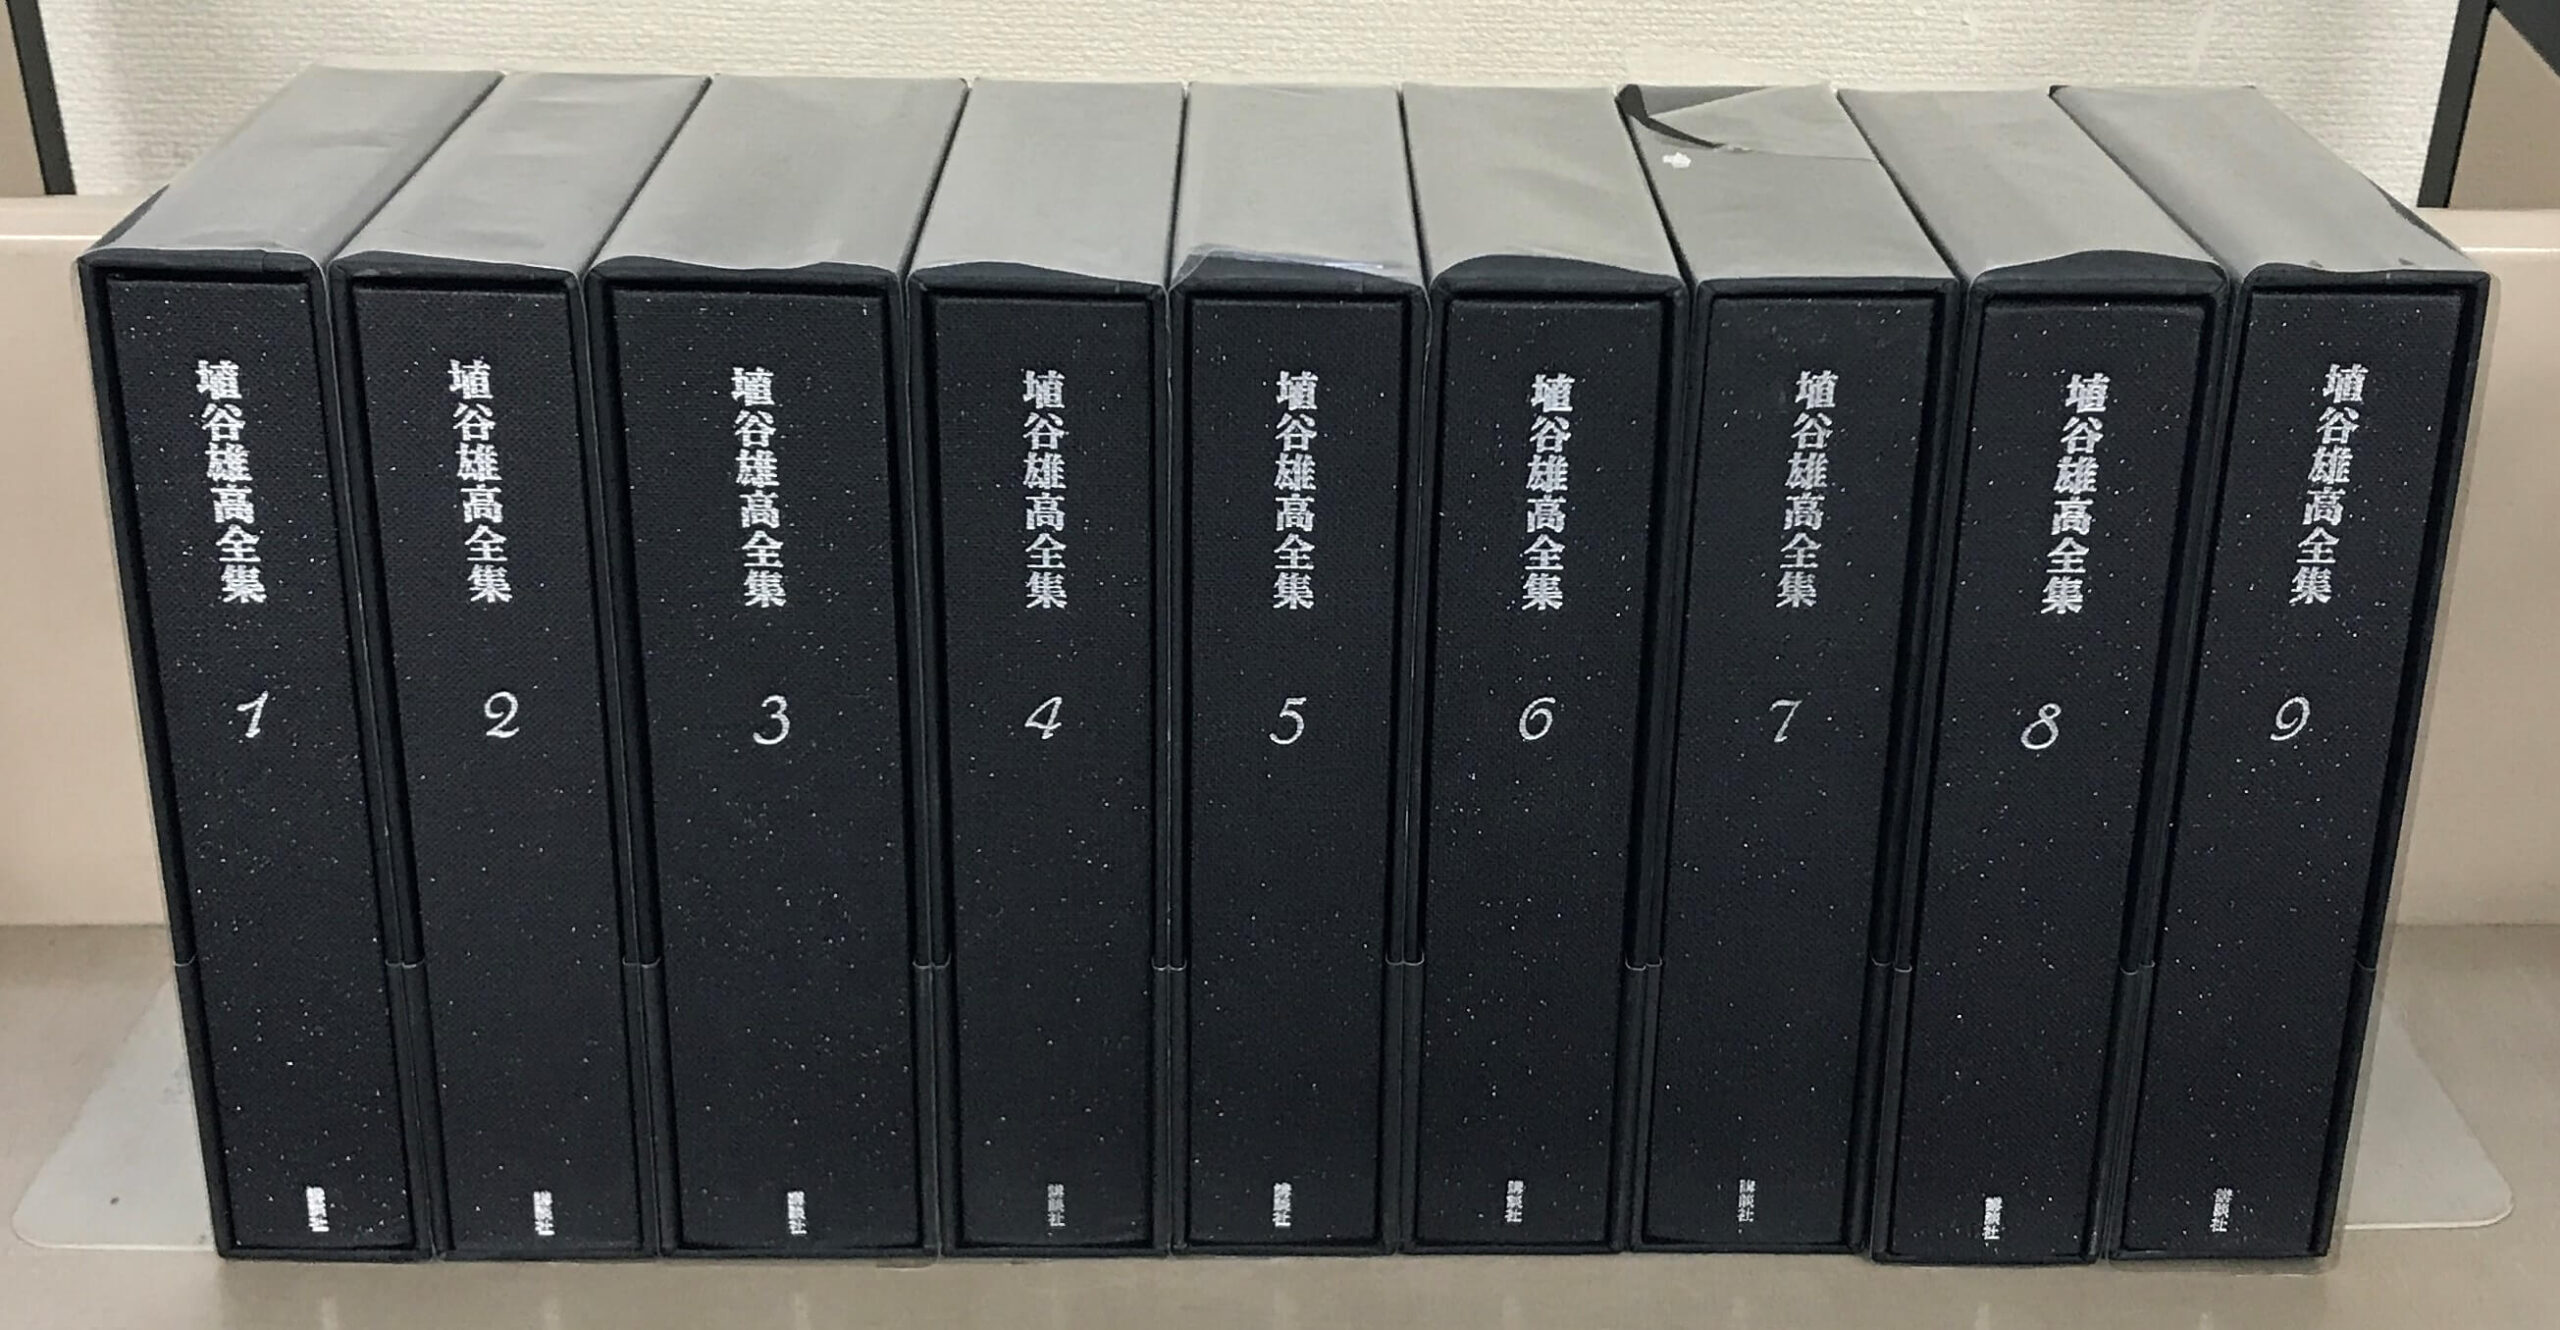 埴谷雄高全集 全20巻 - 古書古本買取の文生書院